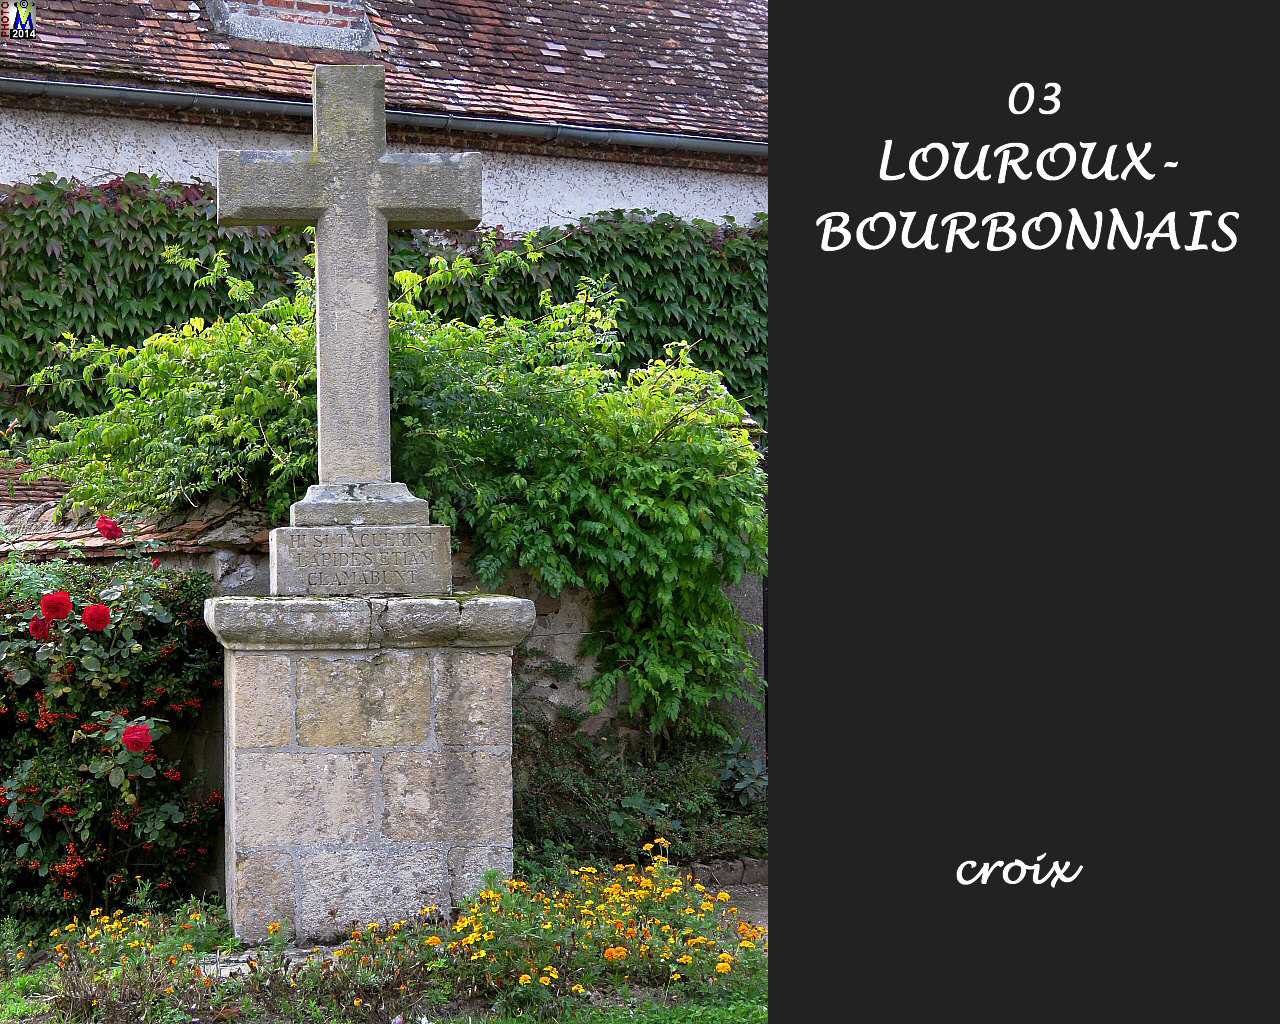 03LOUROUX-BOURBONNAIS_croix_100.jpg